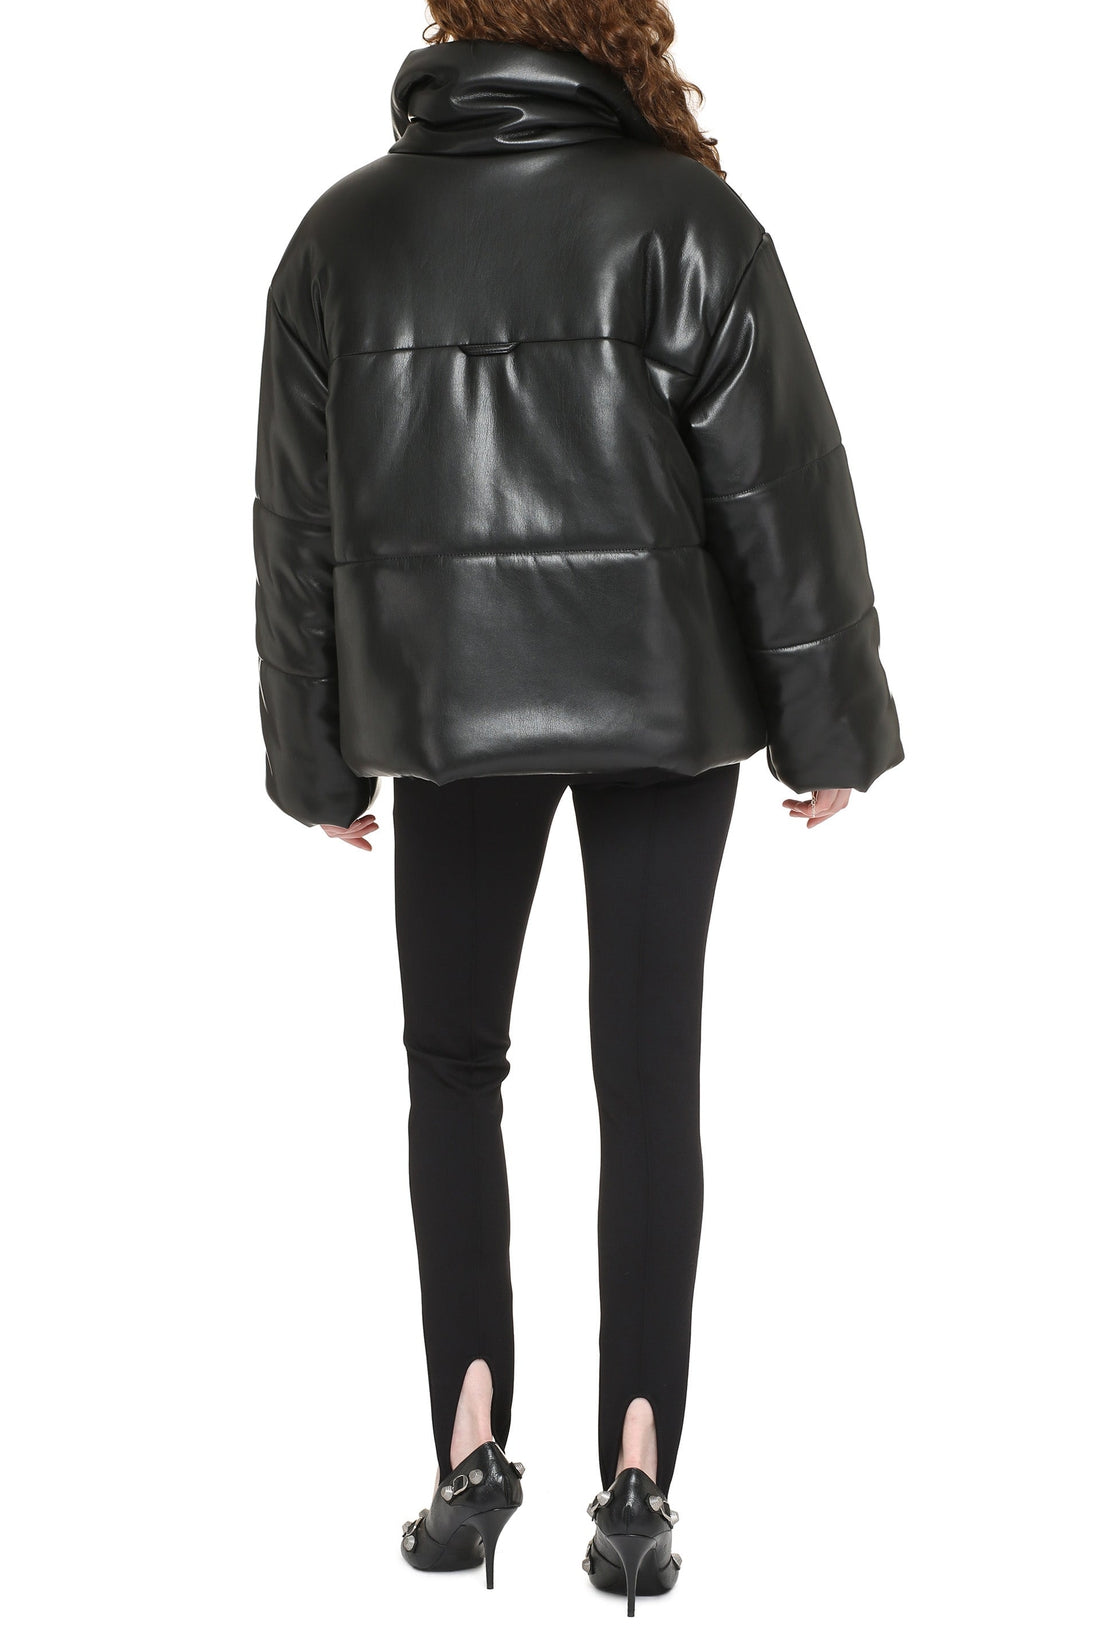 Nanushka-OUTLET-SALE-Hide faux leather down jacket-ARCHIVIST